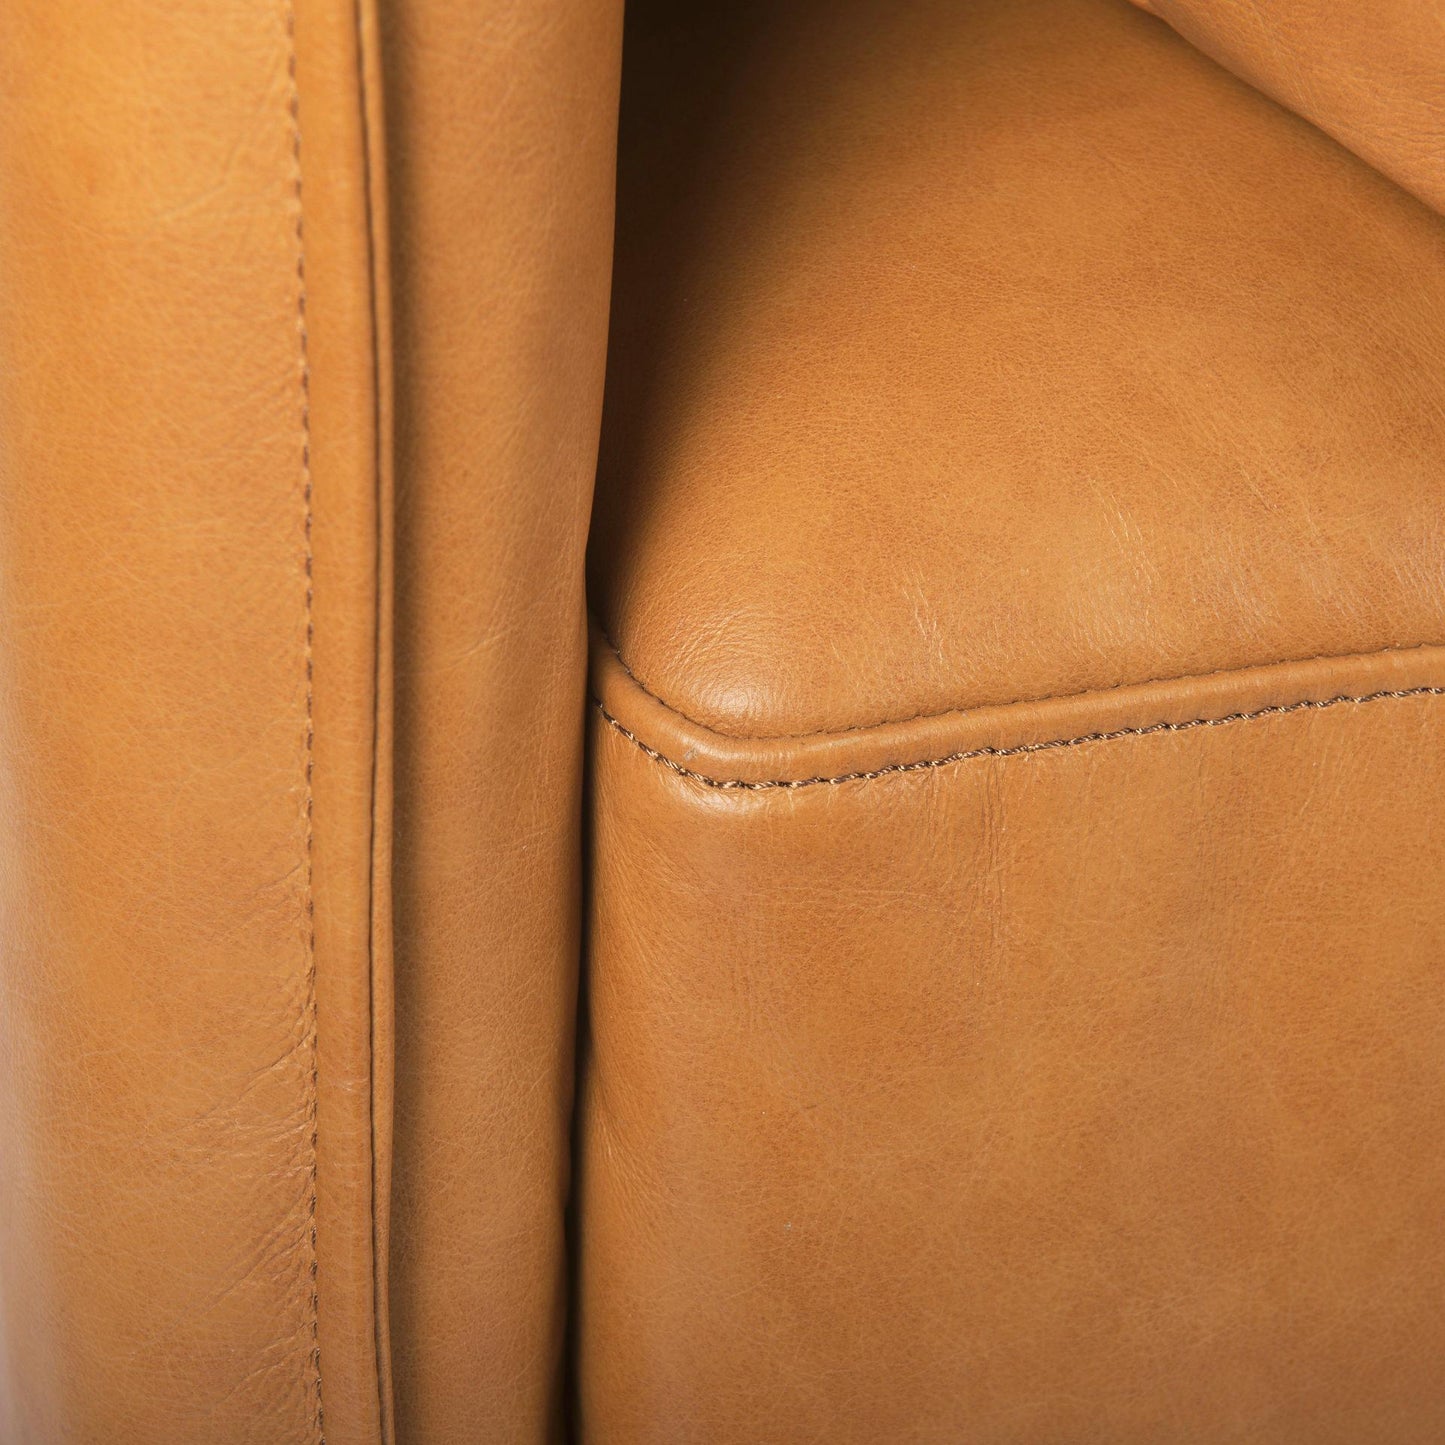 Wells 89.4L x 36.2W x 32.7H Tan Leather Sofa